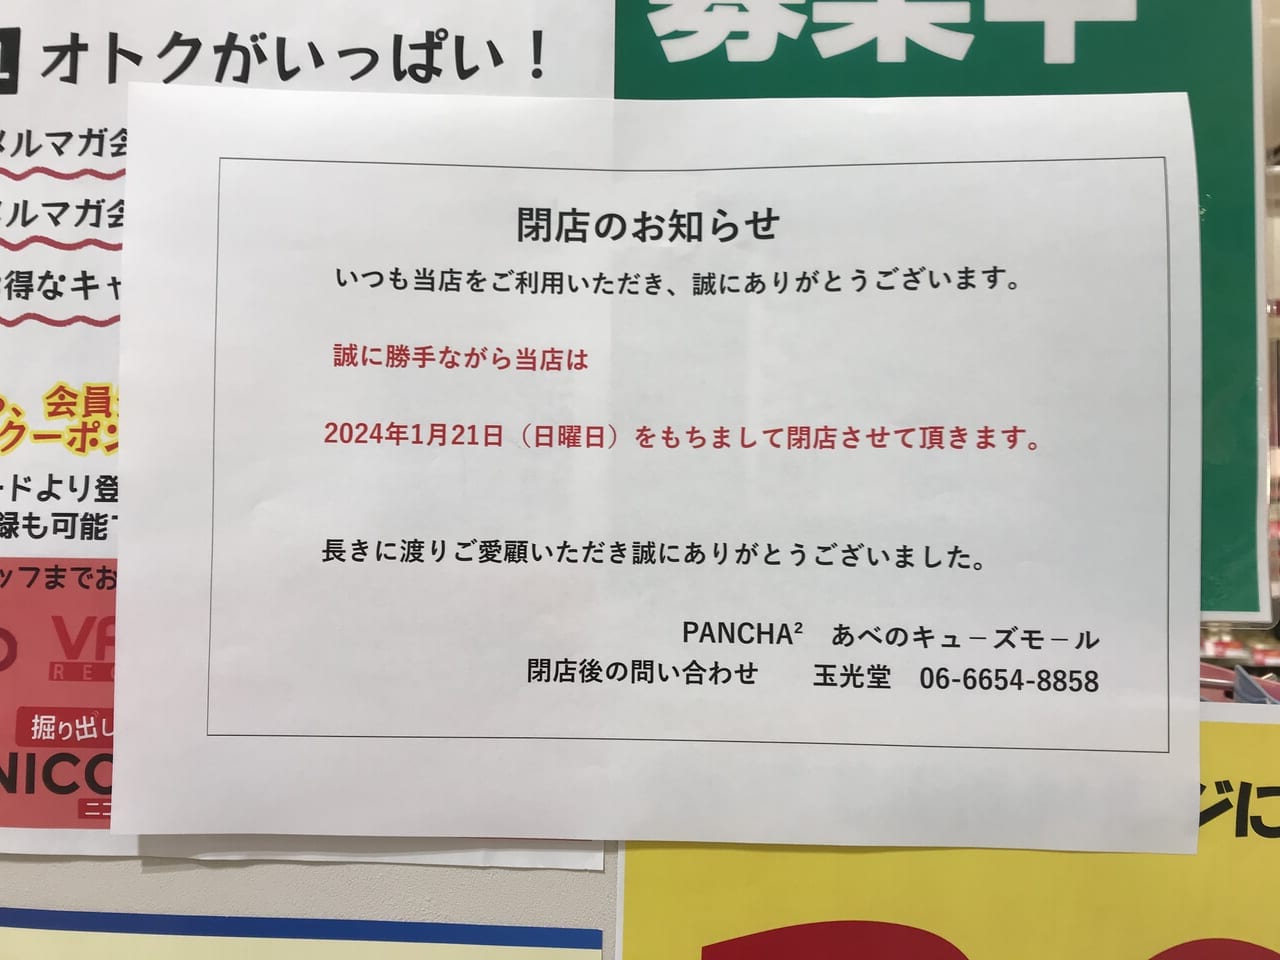 パンチャパンチャあべのキューズモール店の閉店貼り紙